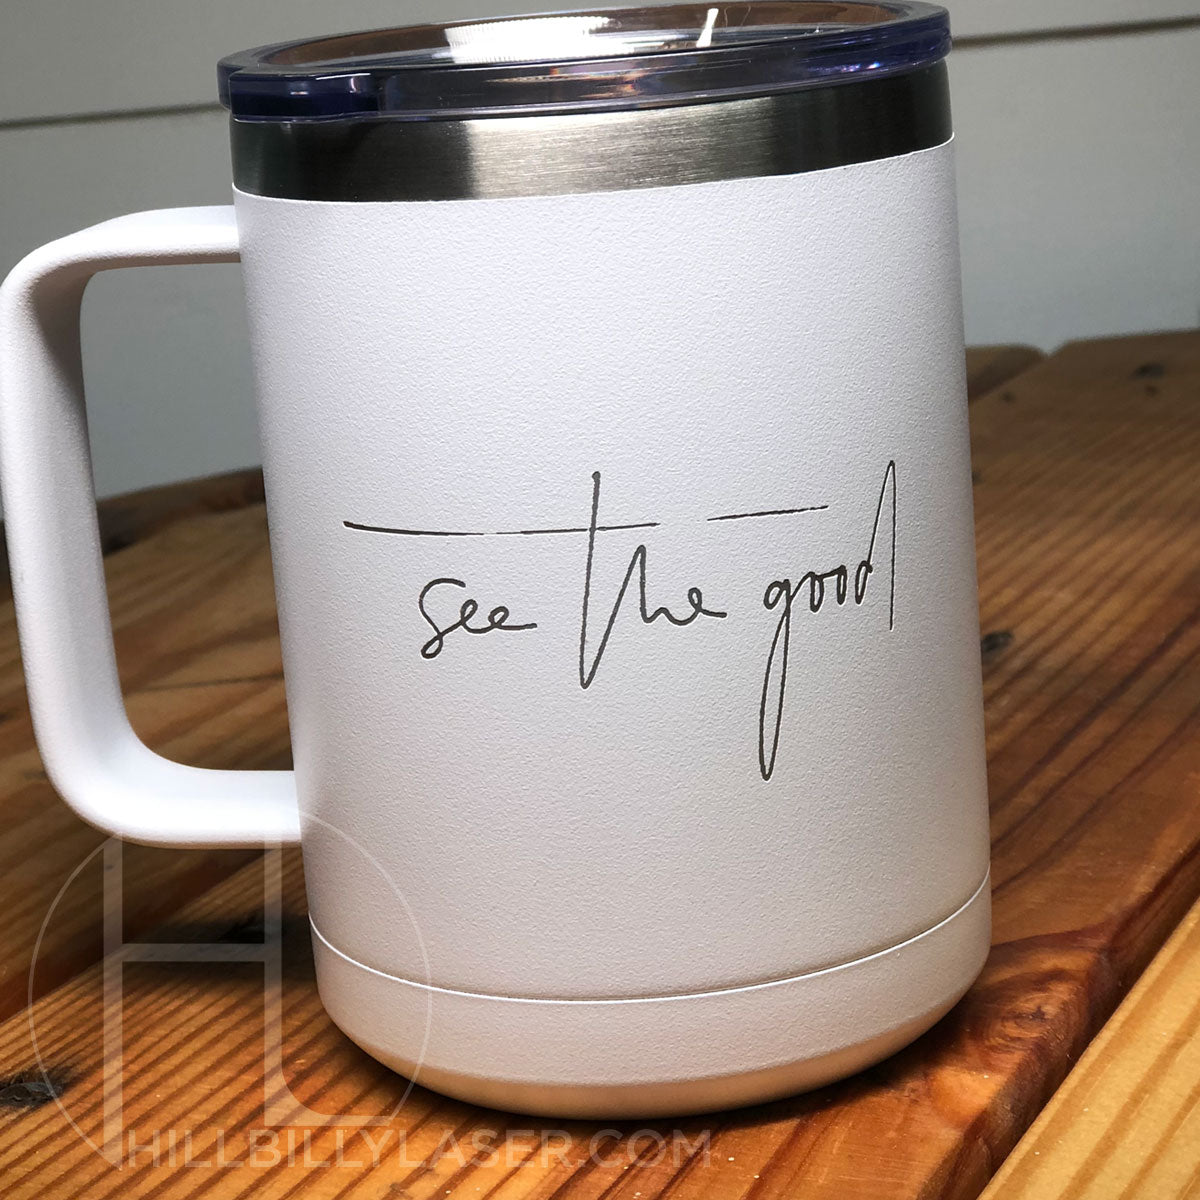 RTIC 20 Oz Travel Cup Coffee Mug Laser Engraved Monogram Coffee